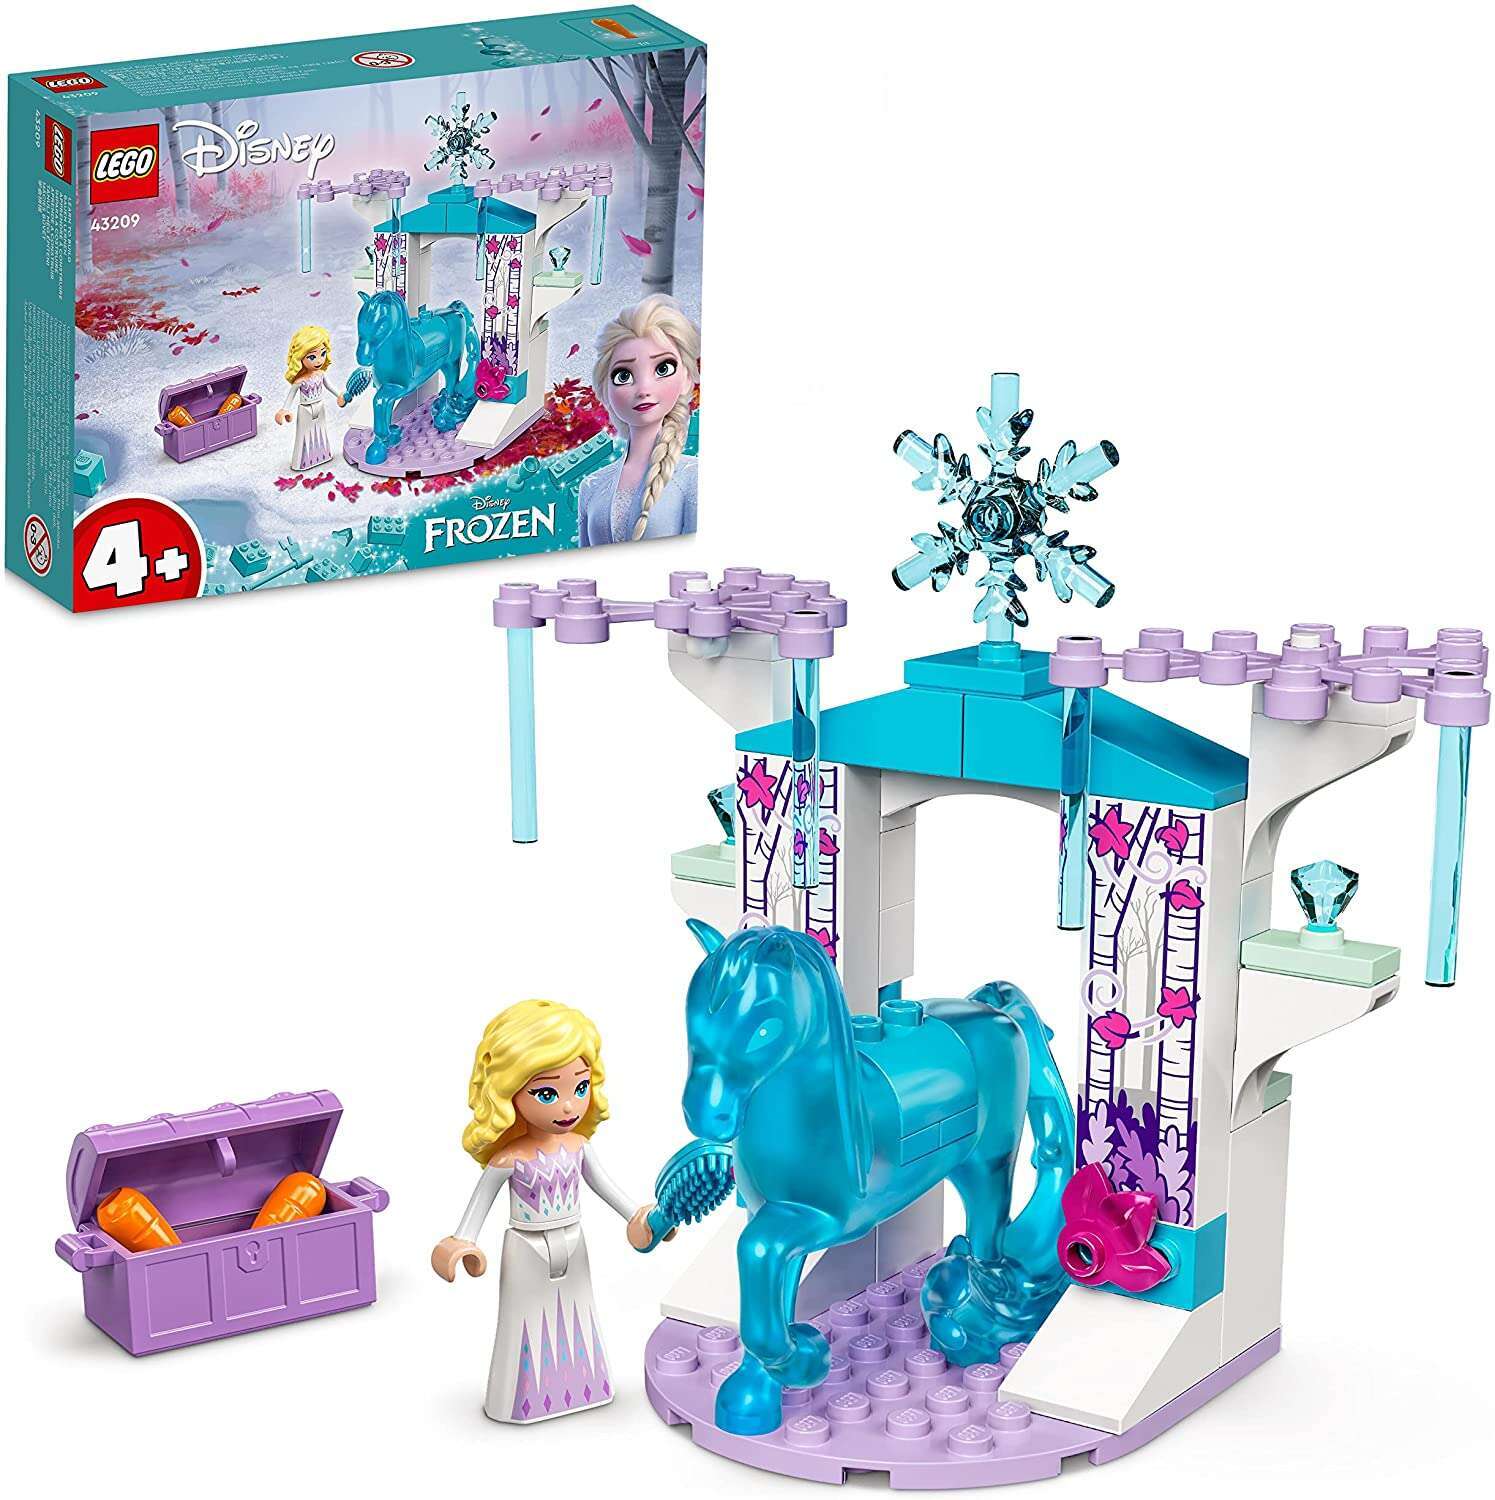 LEGO 43209 Disney Princess Elsa und Nokks Eisstall, Spielfigur, Pferdefigur